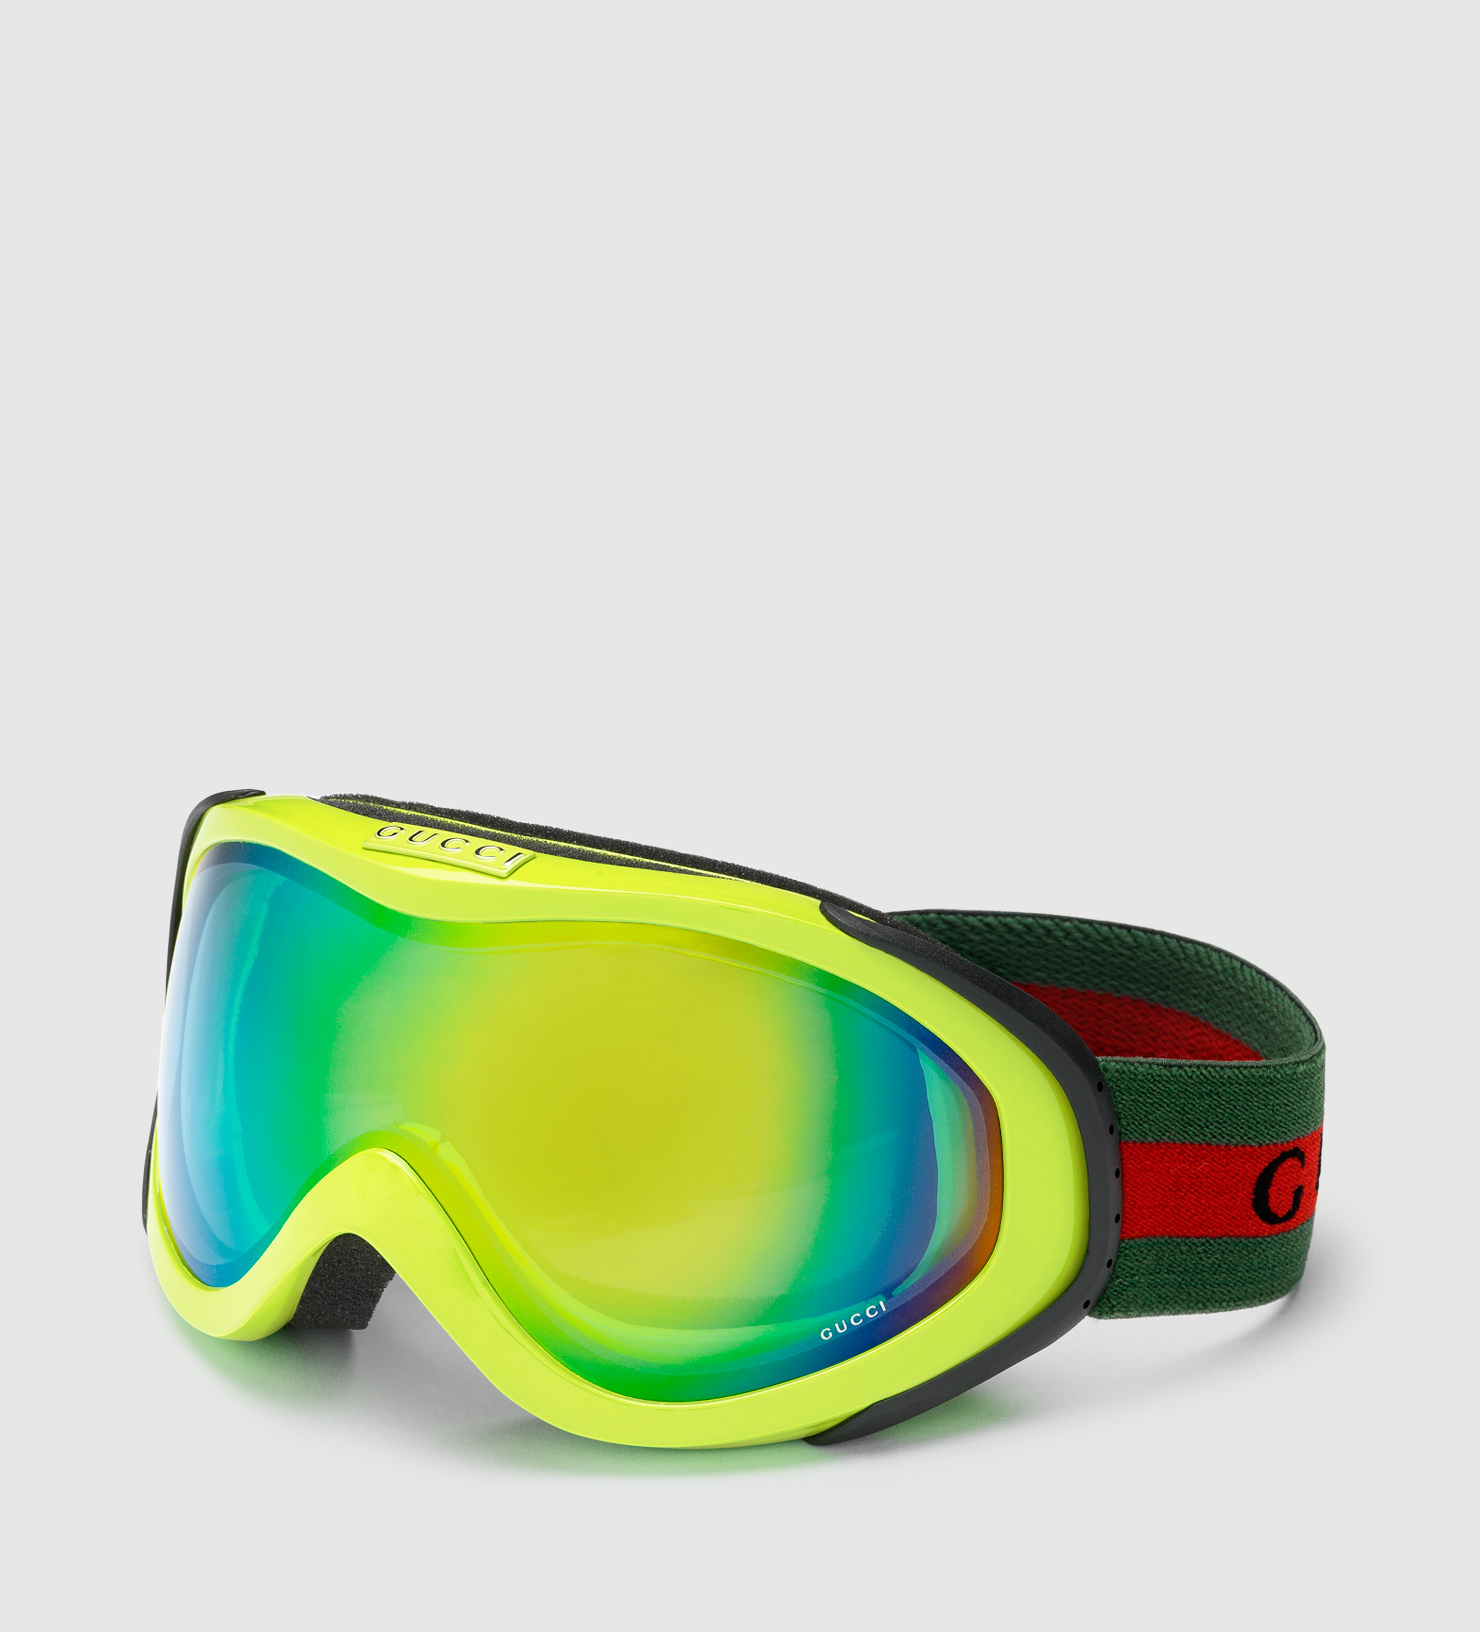 Gucci Neon Yellow Ski Goggles for Men - Lyst